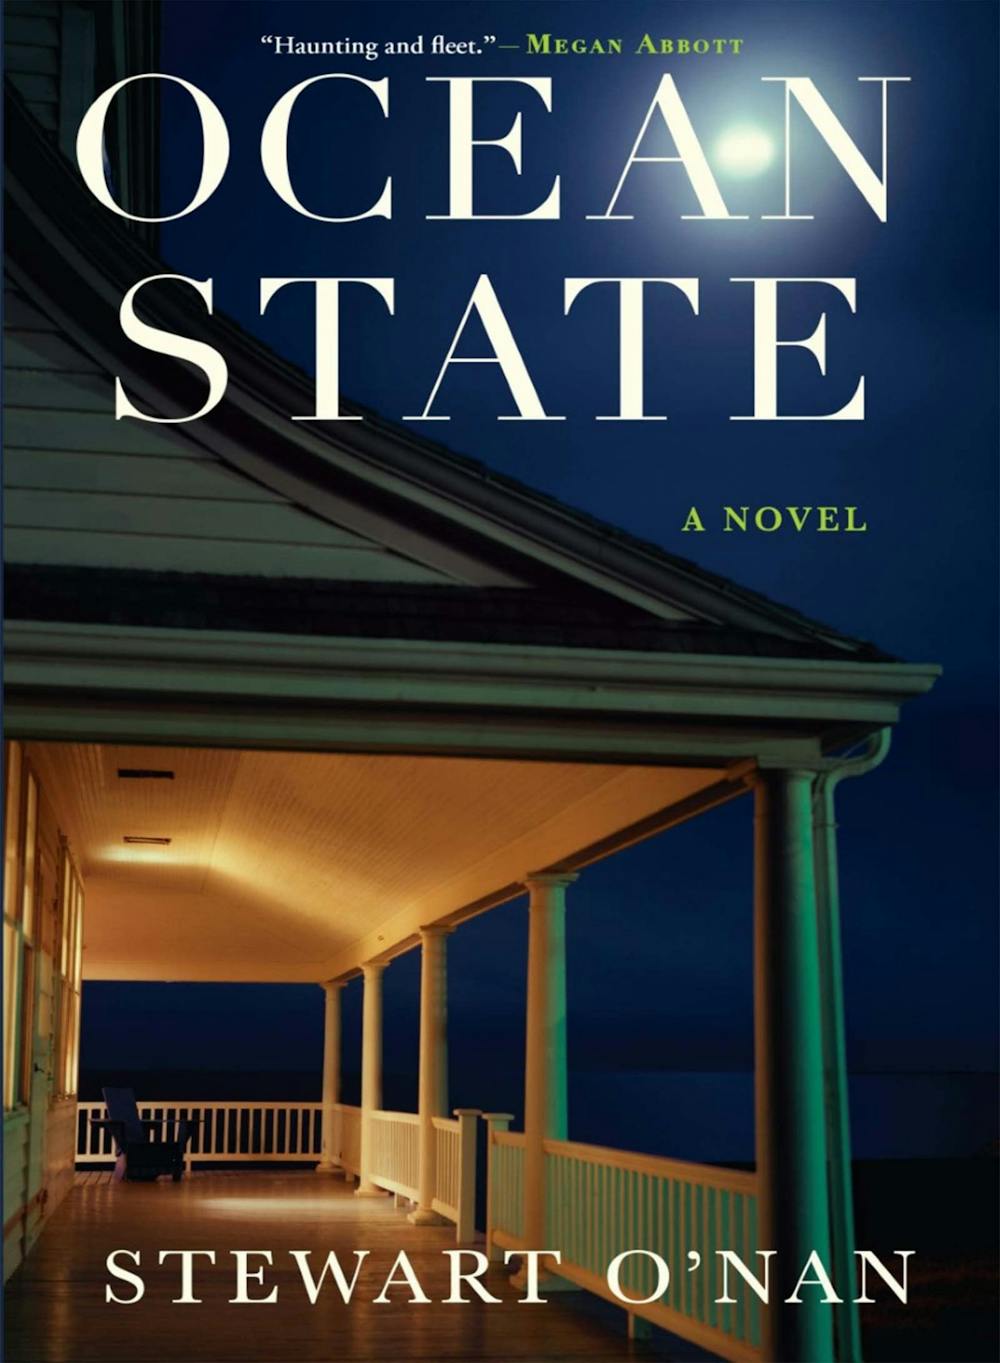 Review: "Ocean State" by Stewart O'Nan